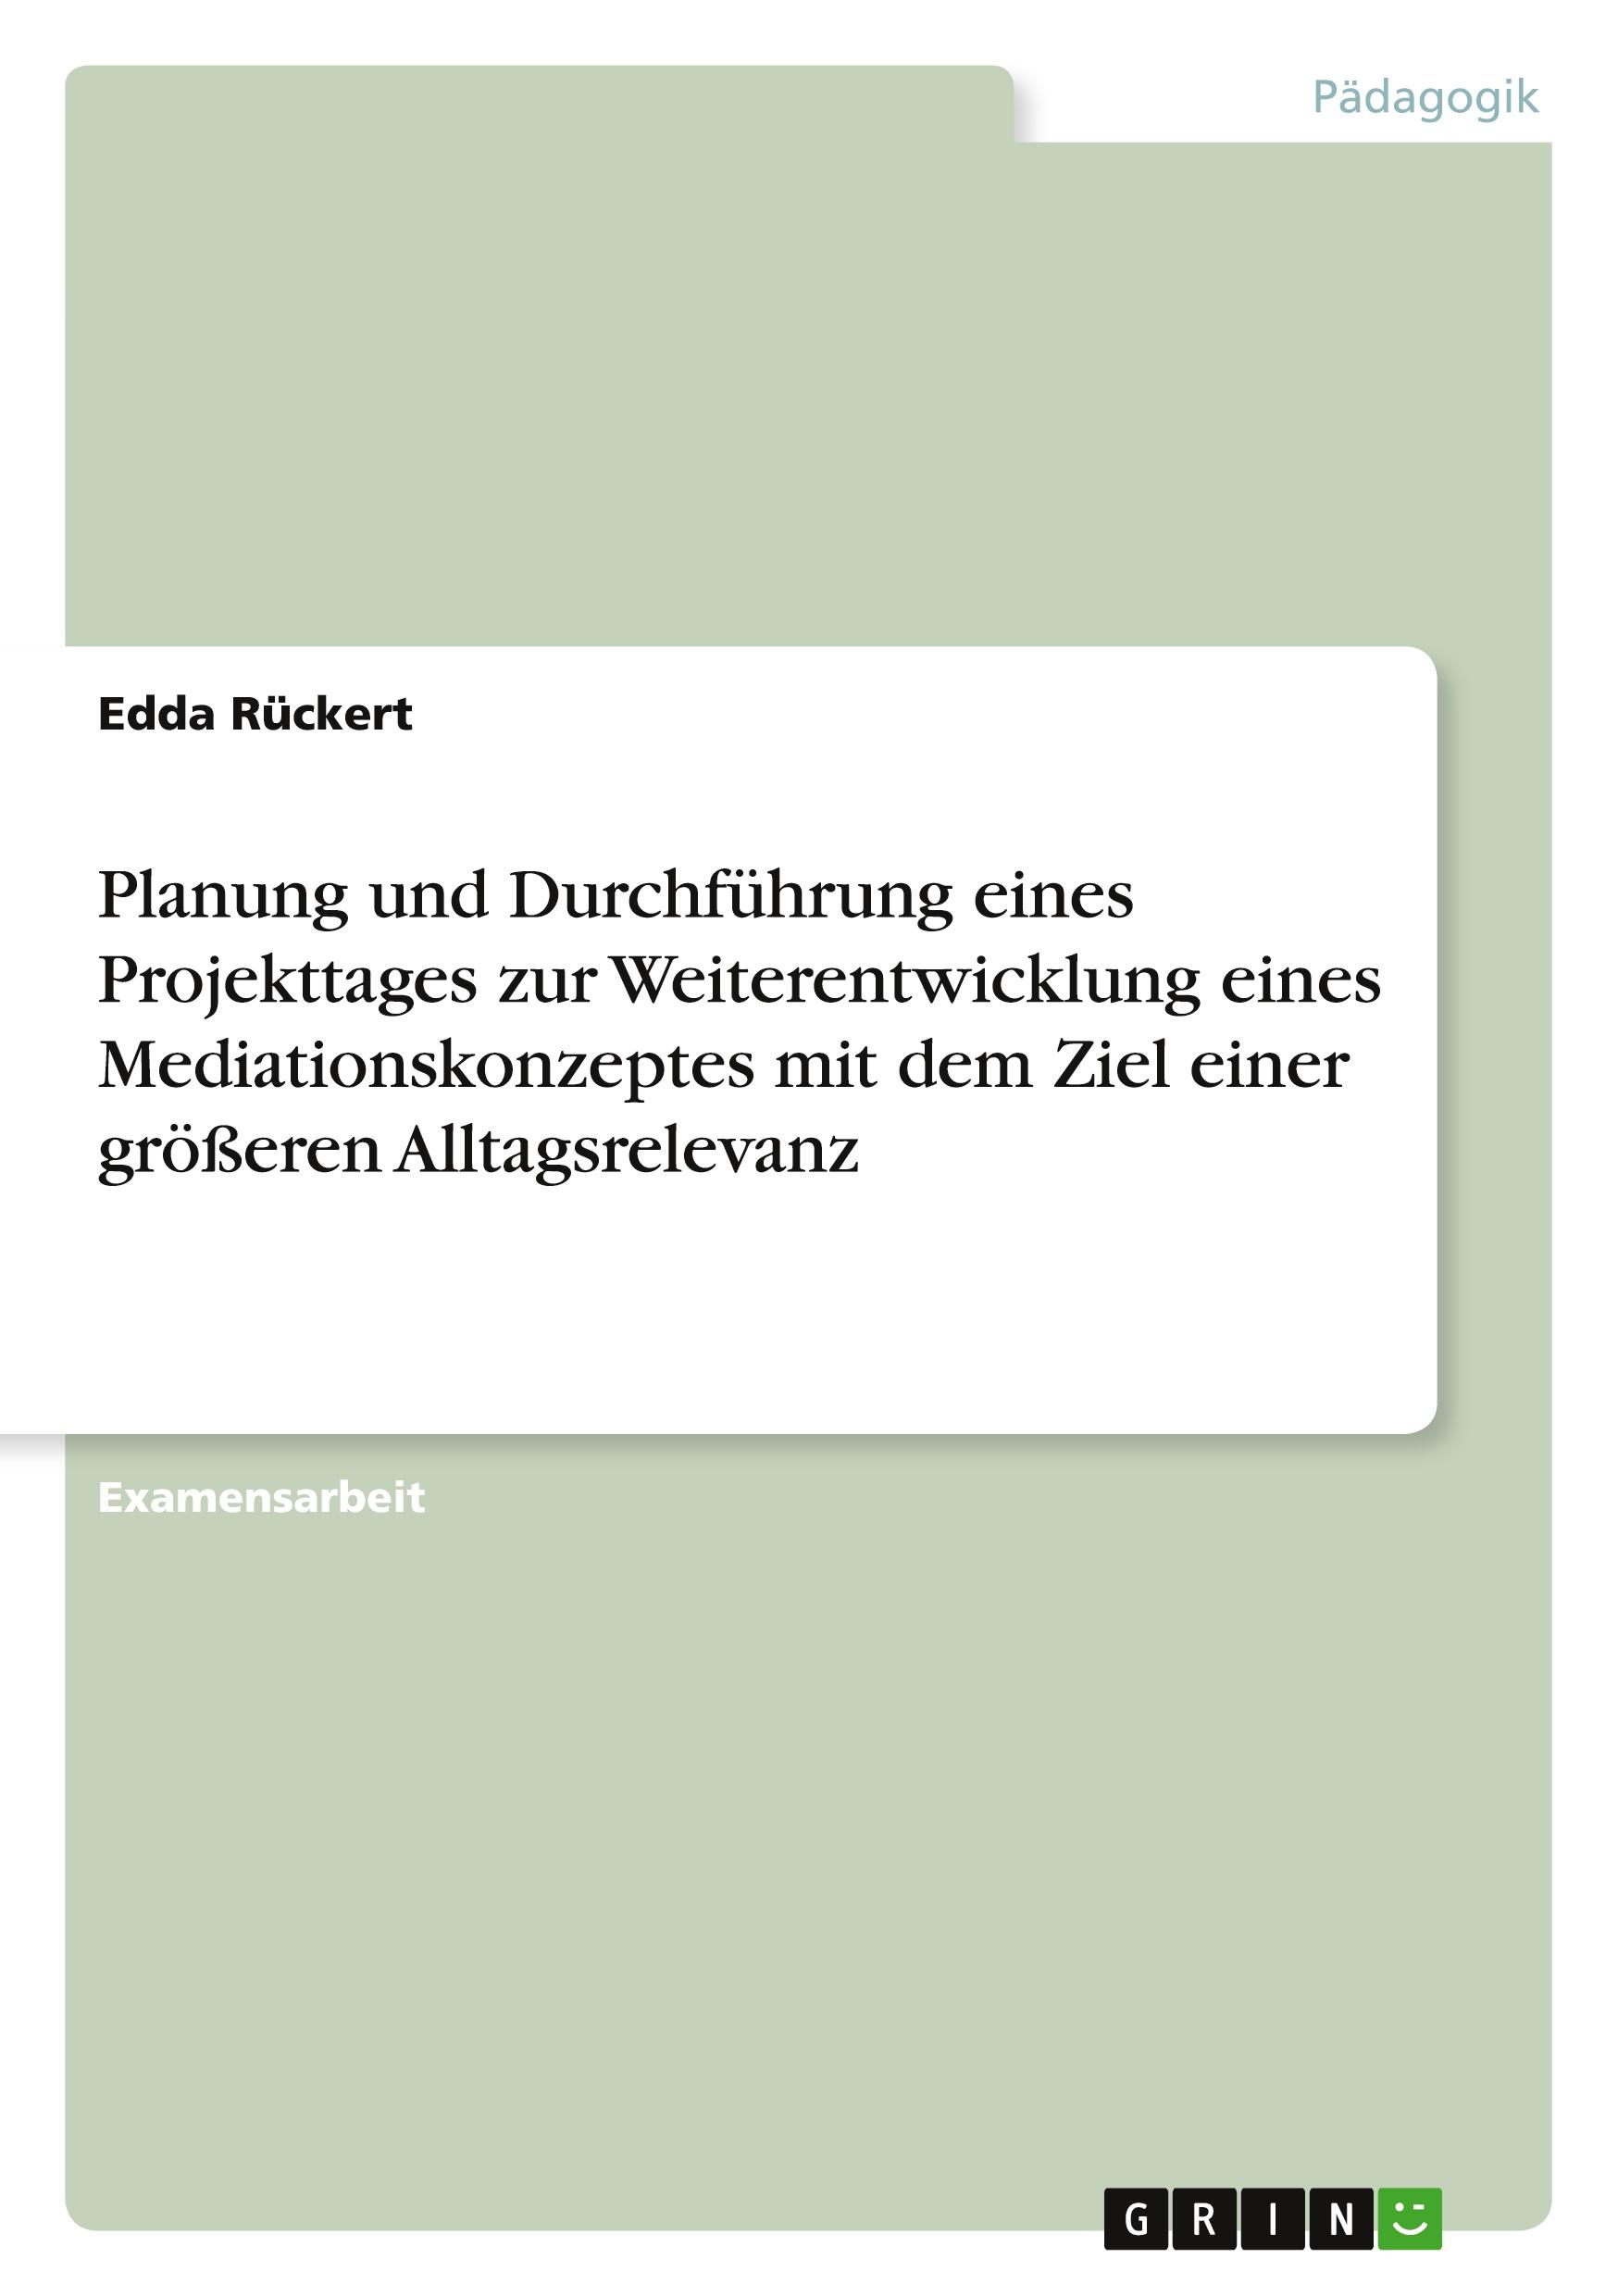 Planung und Durchführung eines Projekttages zur Weiterentwicklung eines Mediationskonzeptes mit dem Ziel einer größeren Alltagsrelevanz / Edda Rückert / Taschenbuch / Paperback / 36 S. / Deutsch - Rückert, Edda